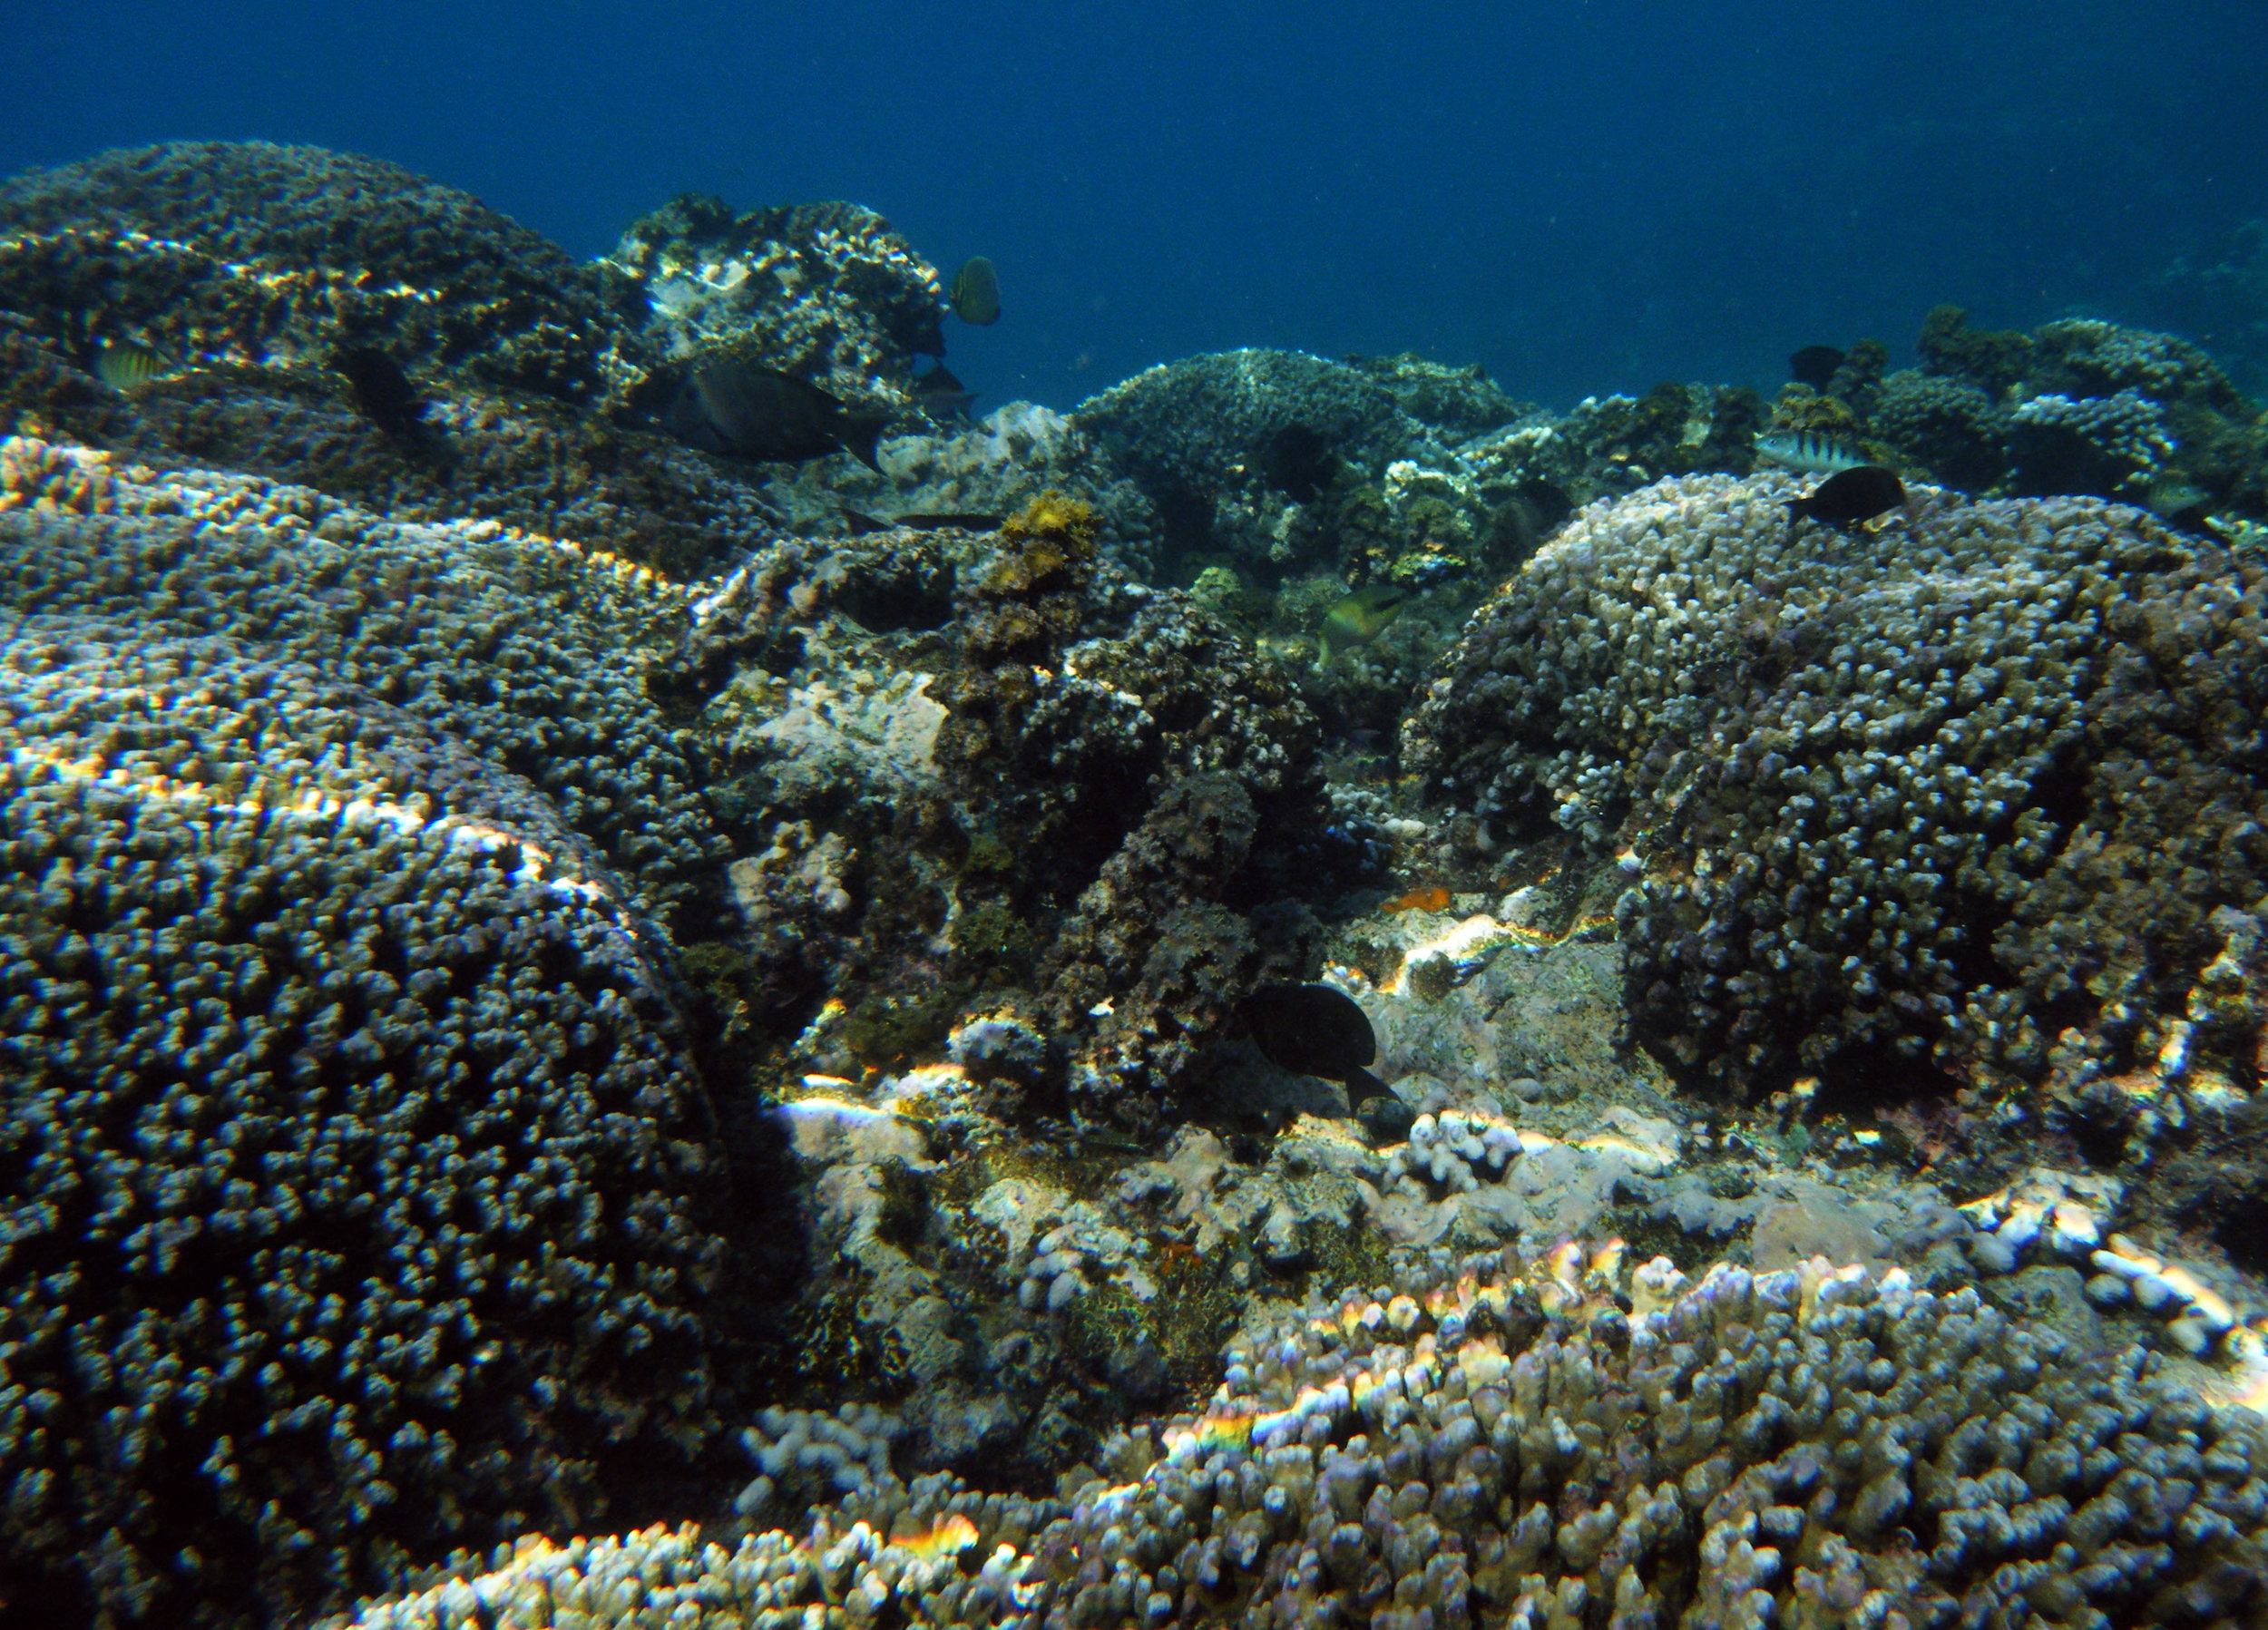 Porites reef.jpg